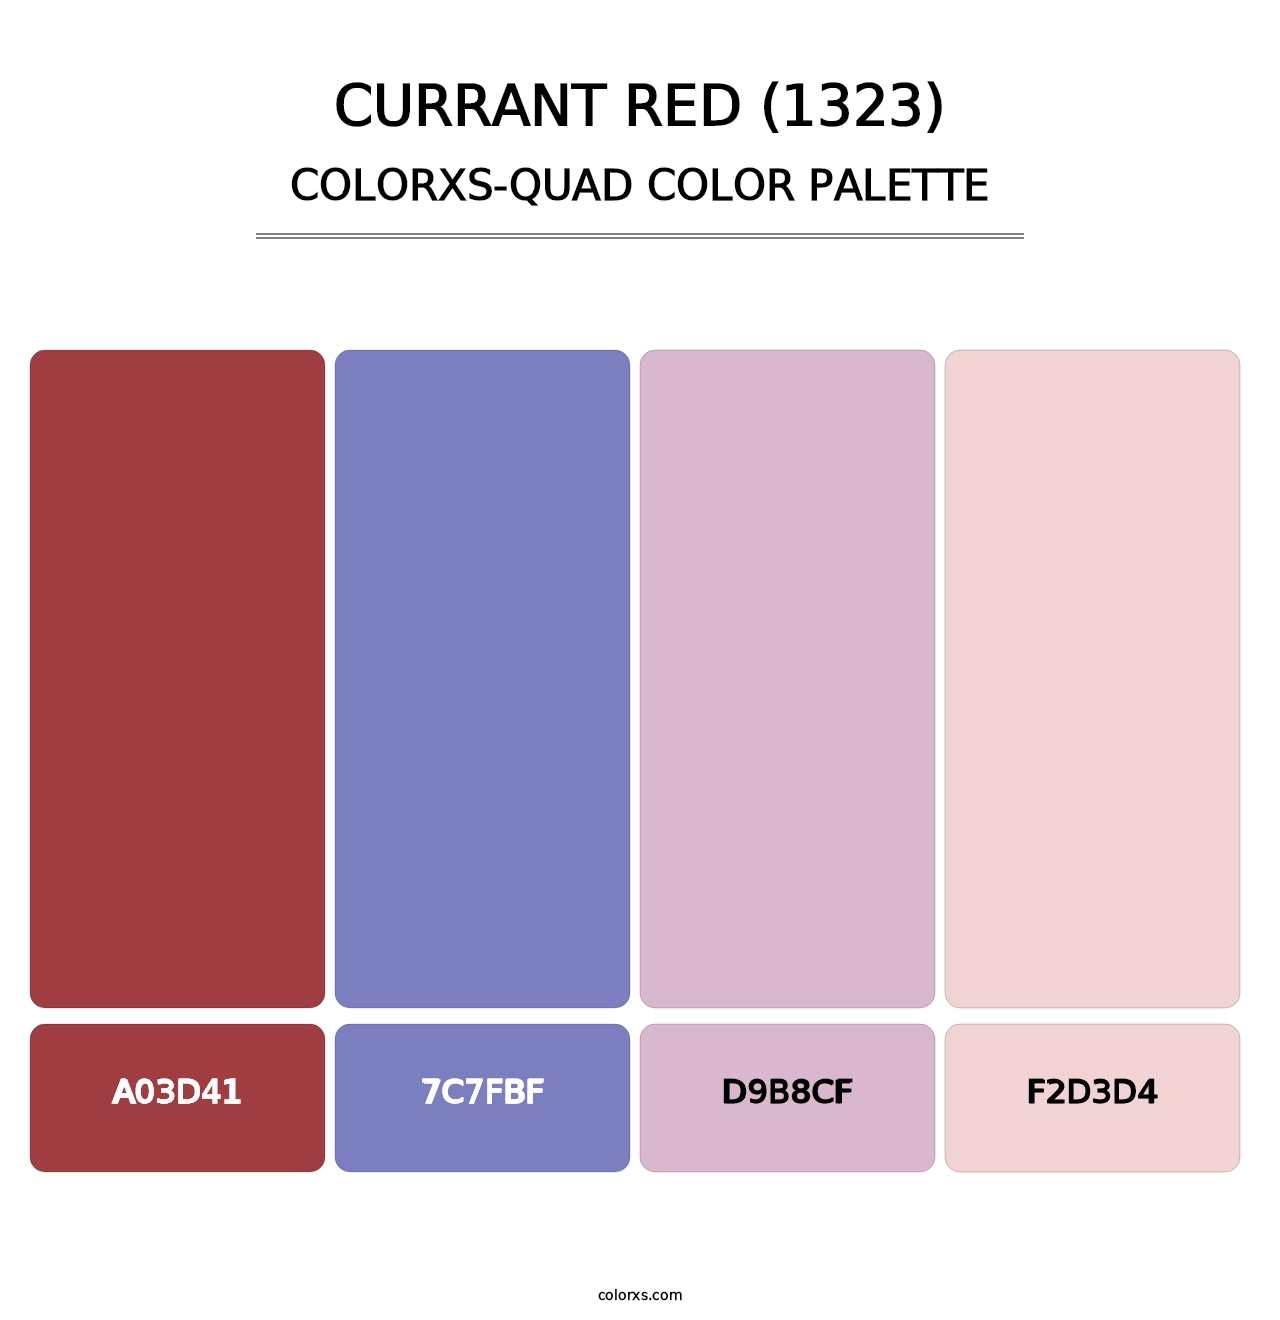 Currant Red (1323) - Colorxs Quad Palette